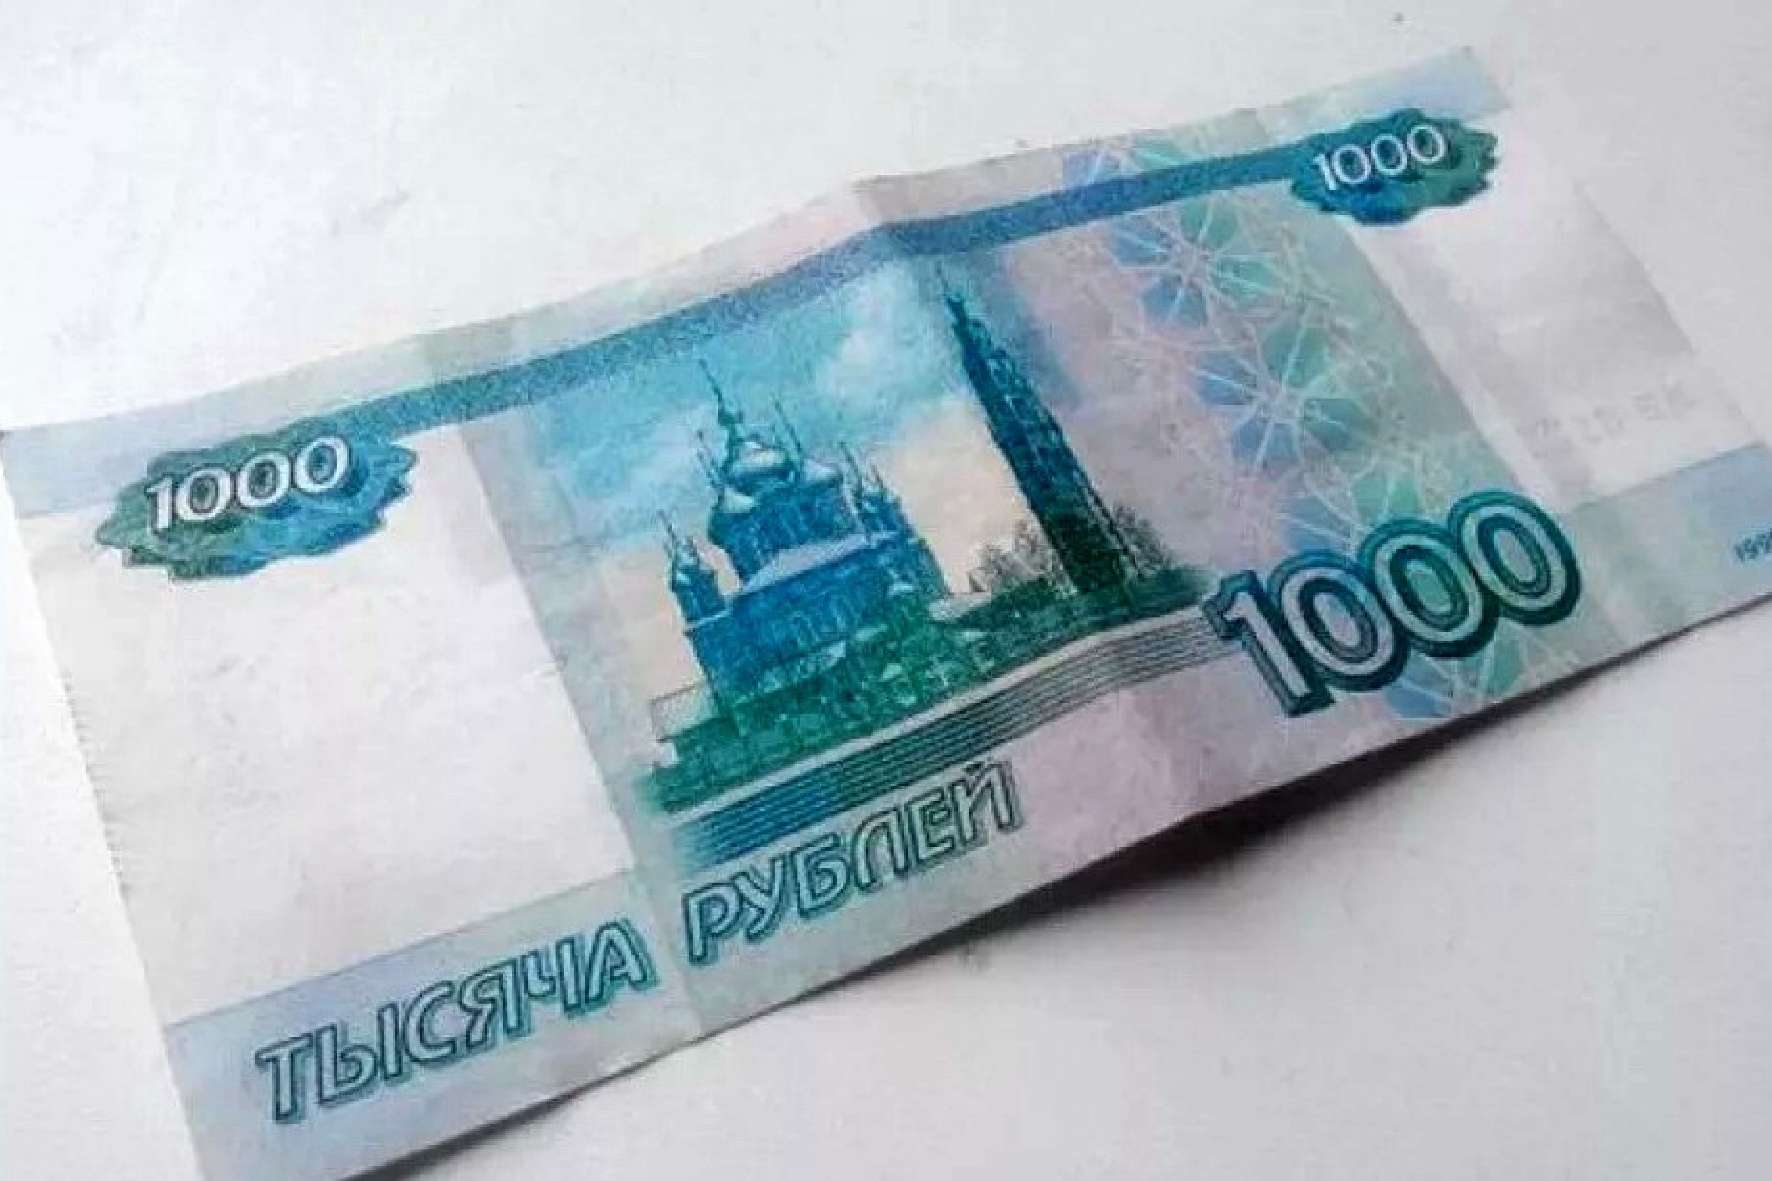 1000 рублей за кг. 1000 Рублей. Купюра 1000 рублей. Банкнота 1000 рублей. 1000 Рублей изображение.